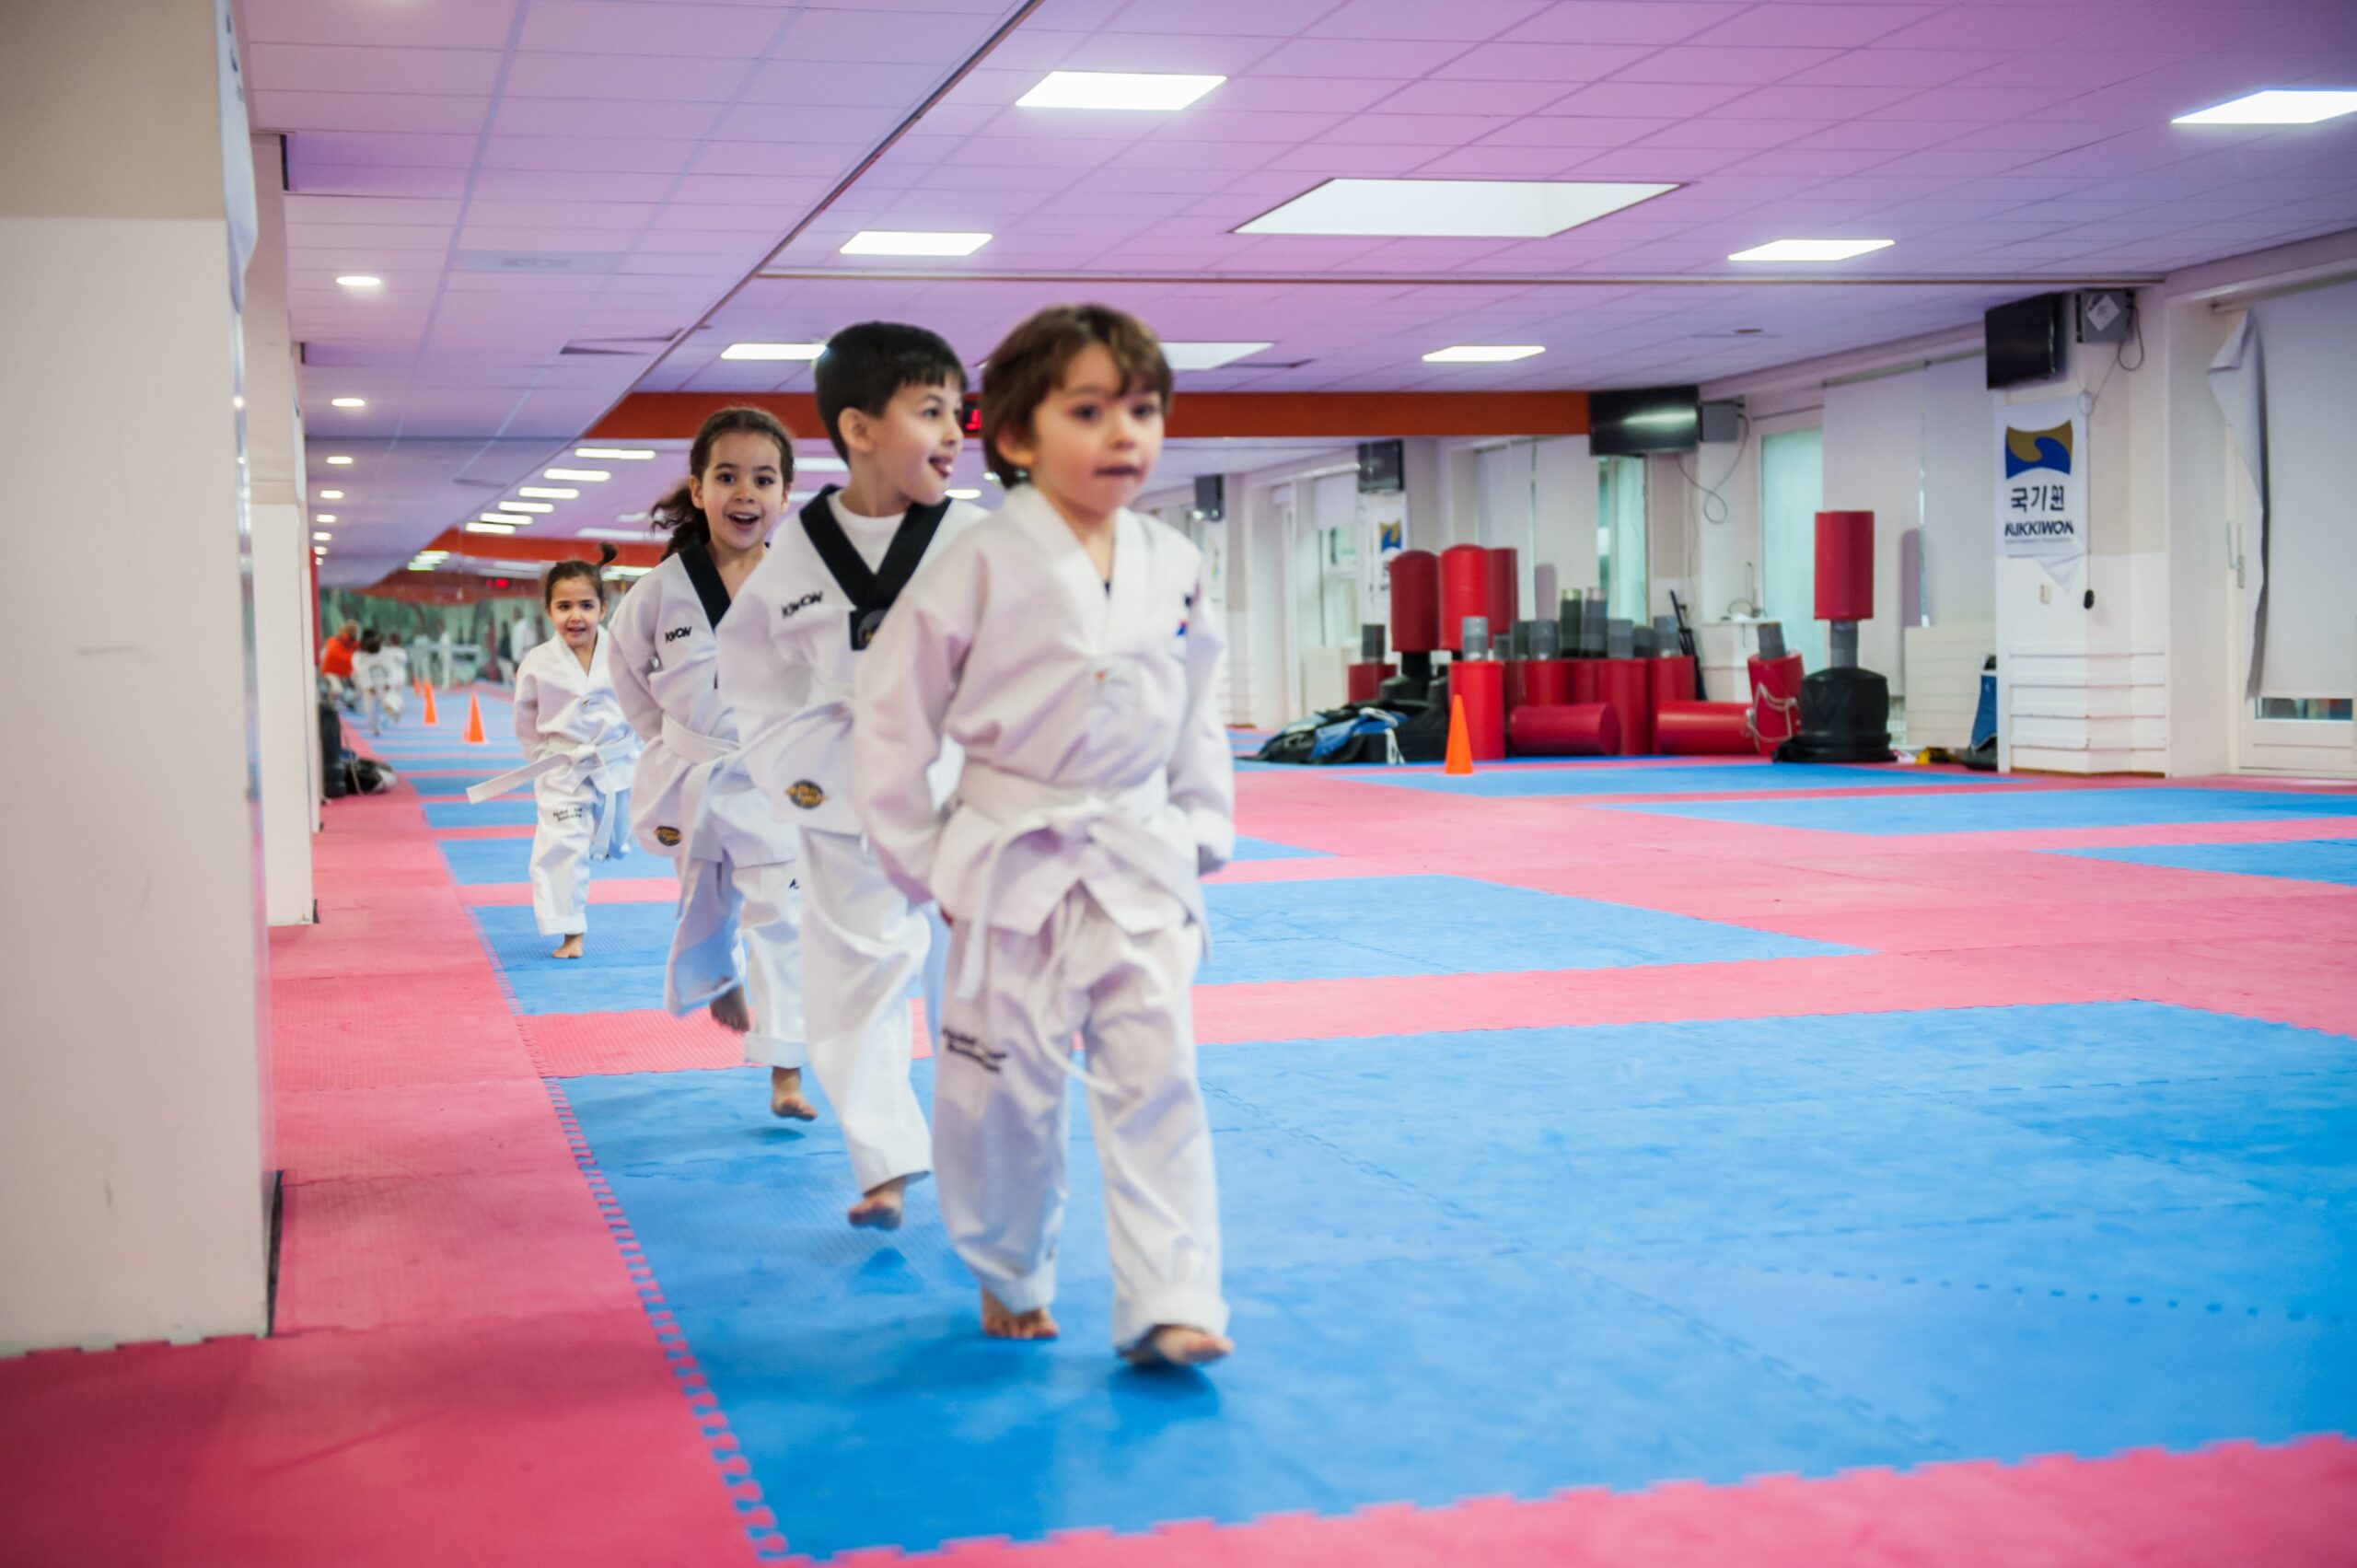 De mini’s: taekwondo voor de kinderen vanaf 3 jaar